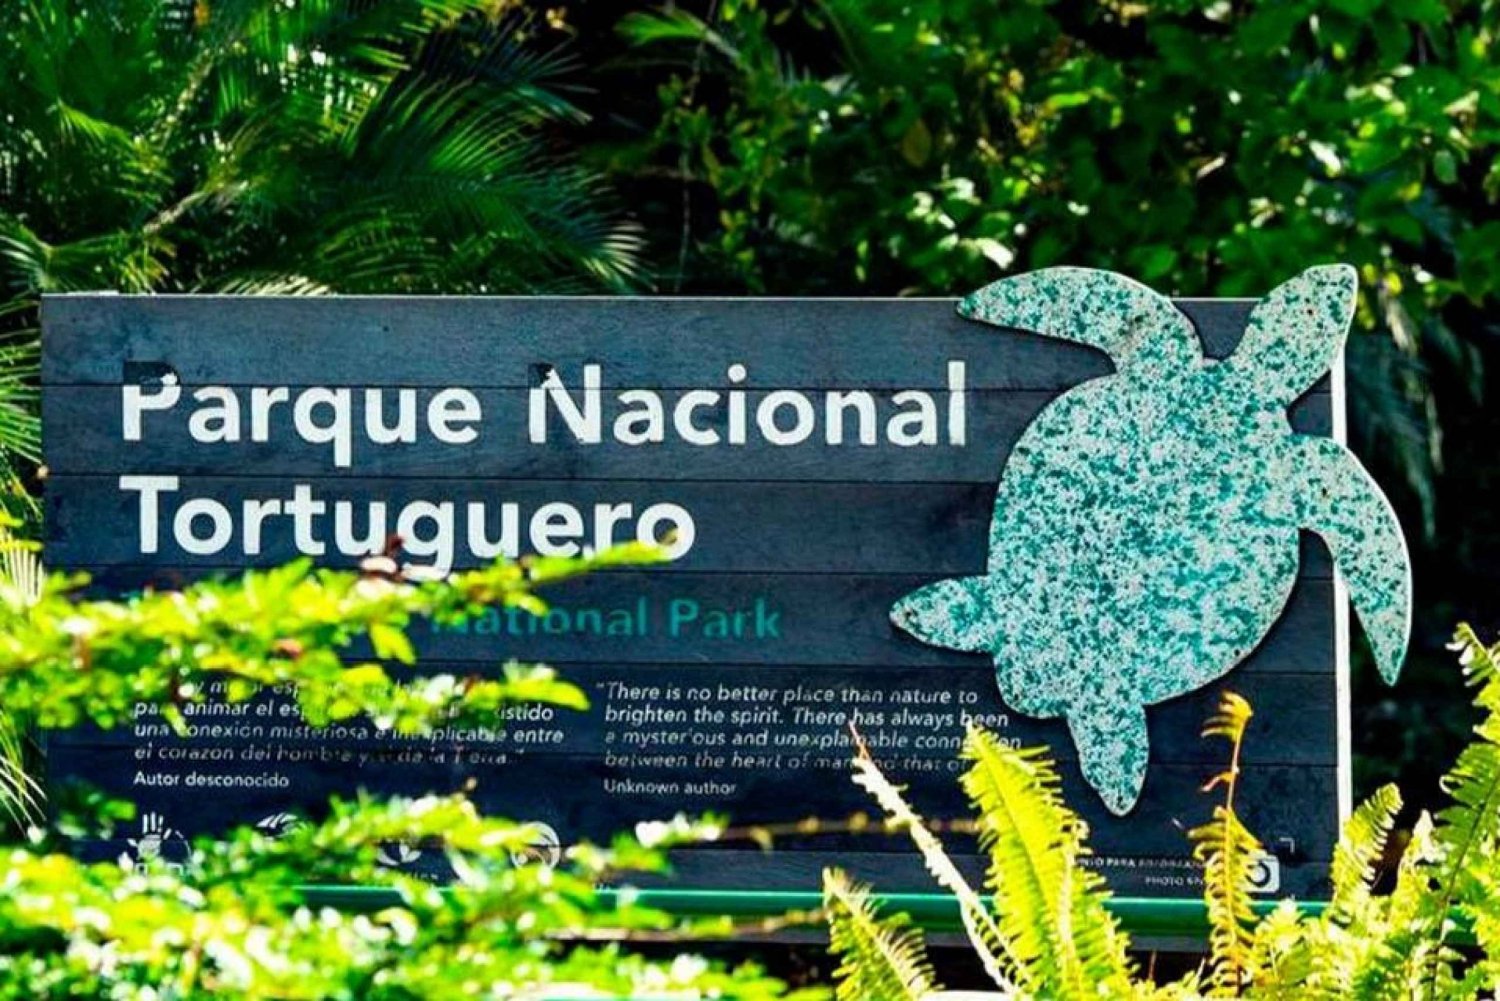 Nationaal park Tortuguero: De leukste dingen om te doen in Tortuguero